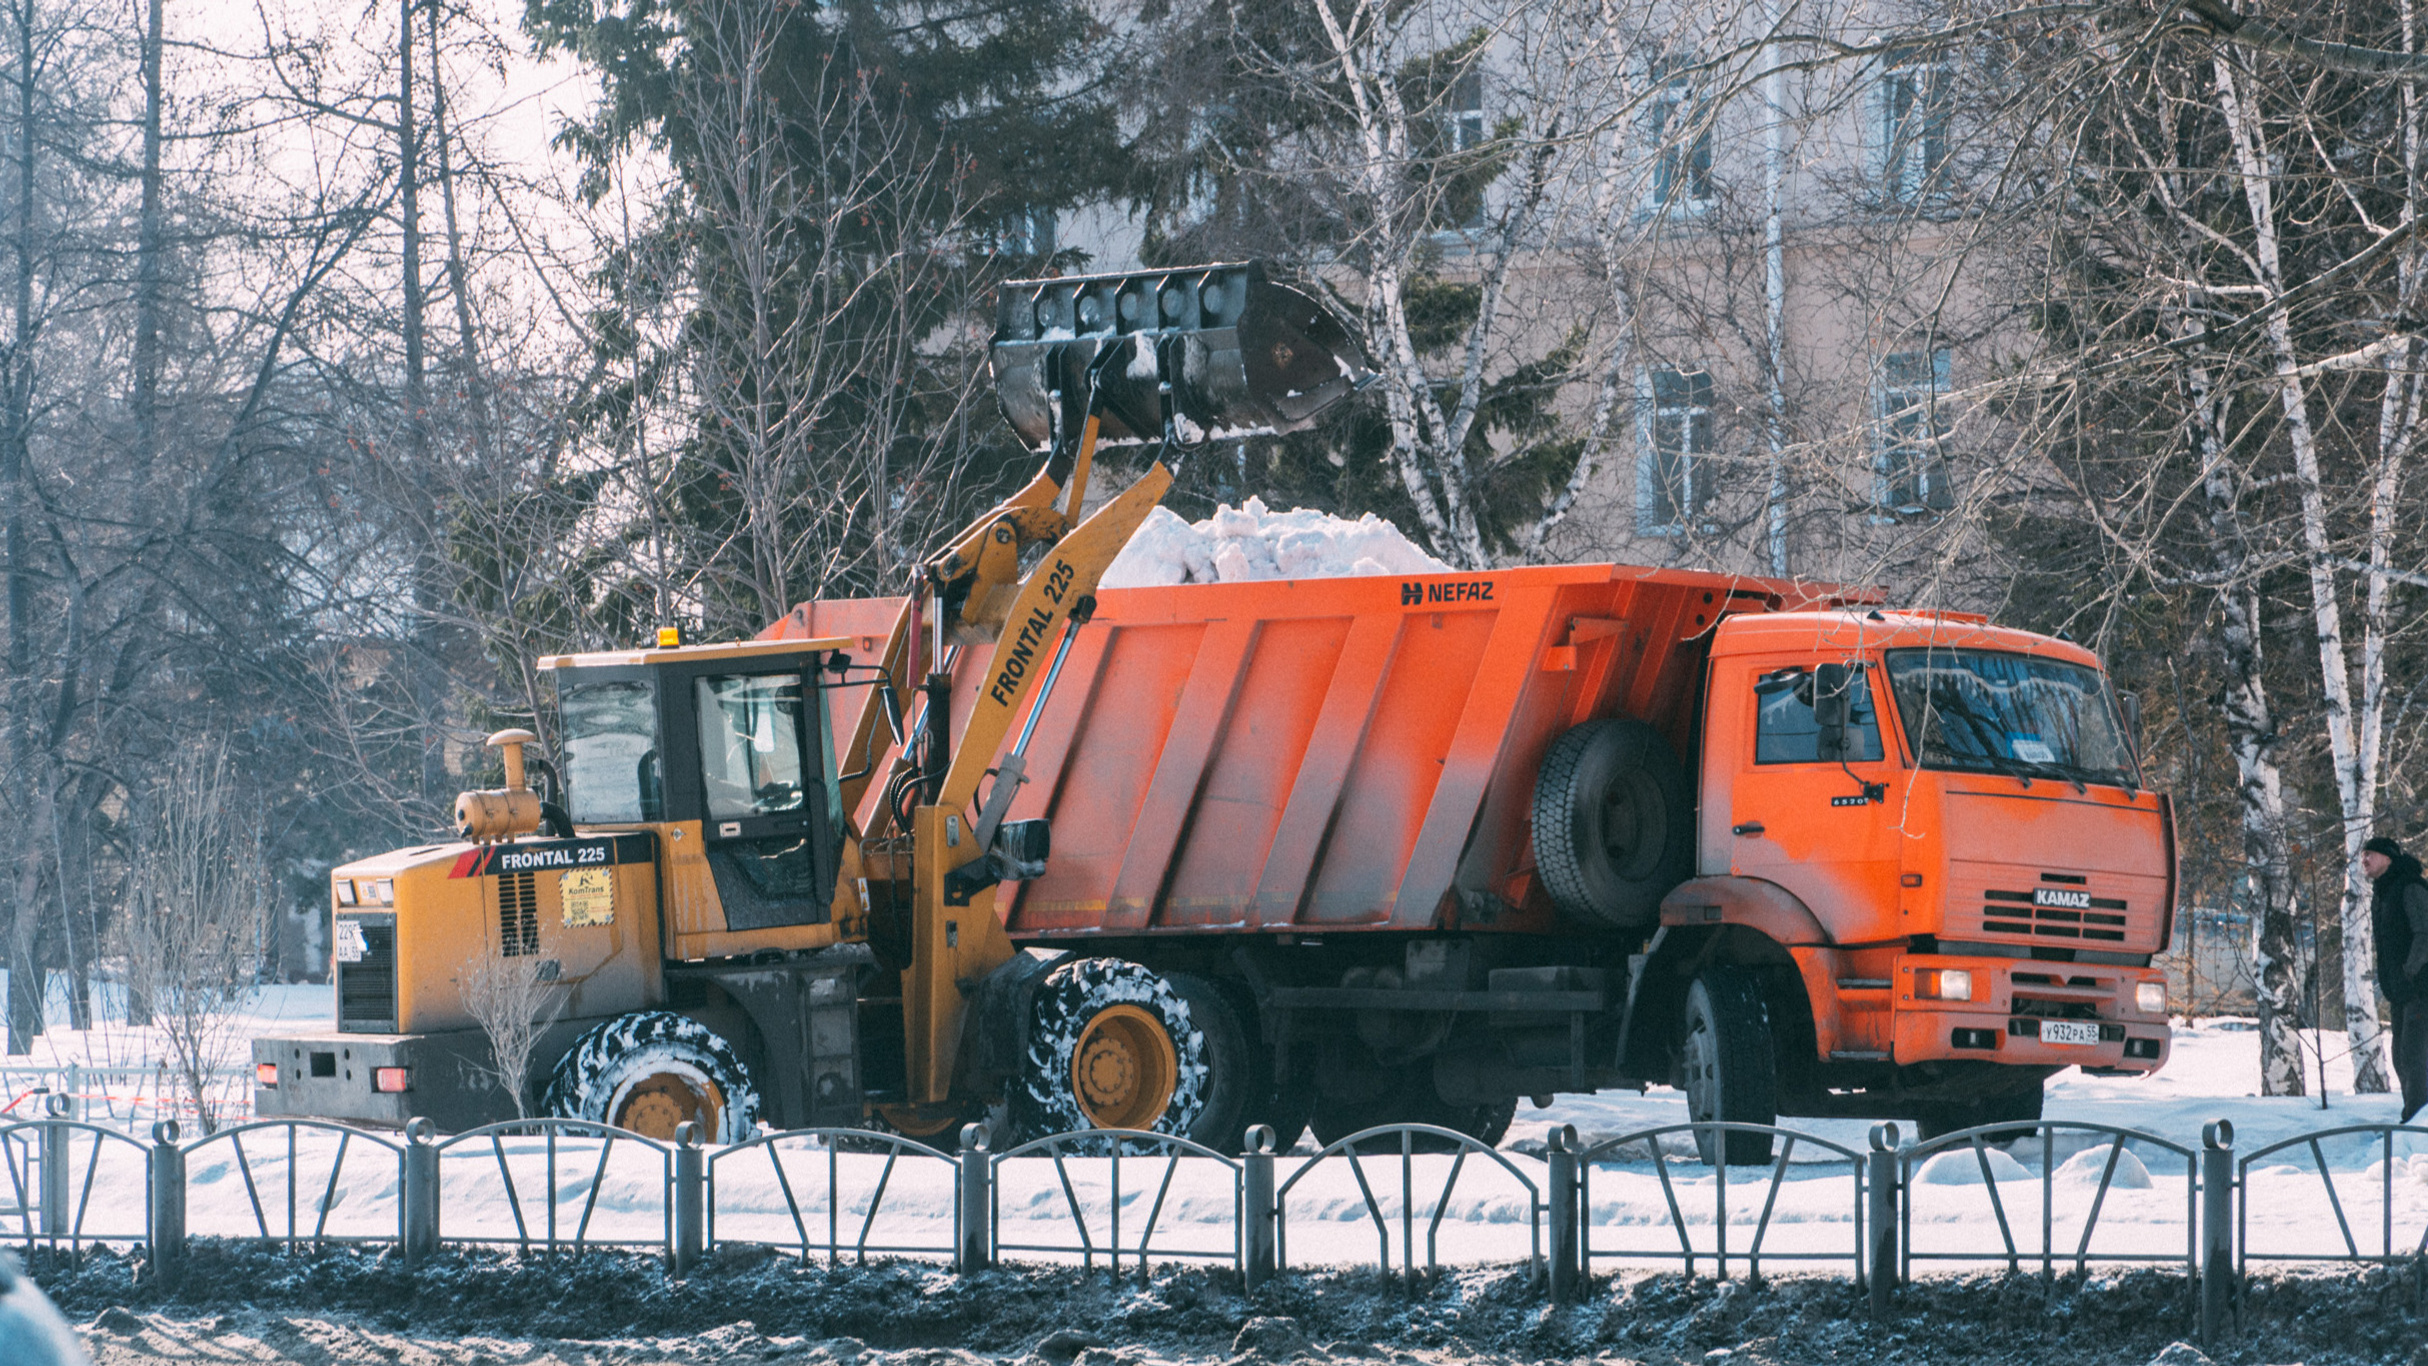 Самосвалы из Кемерова будут убирать дороги в Омске